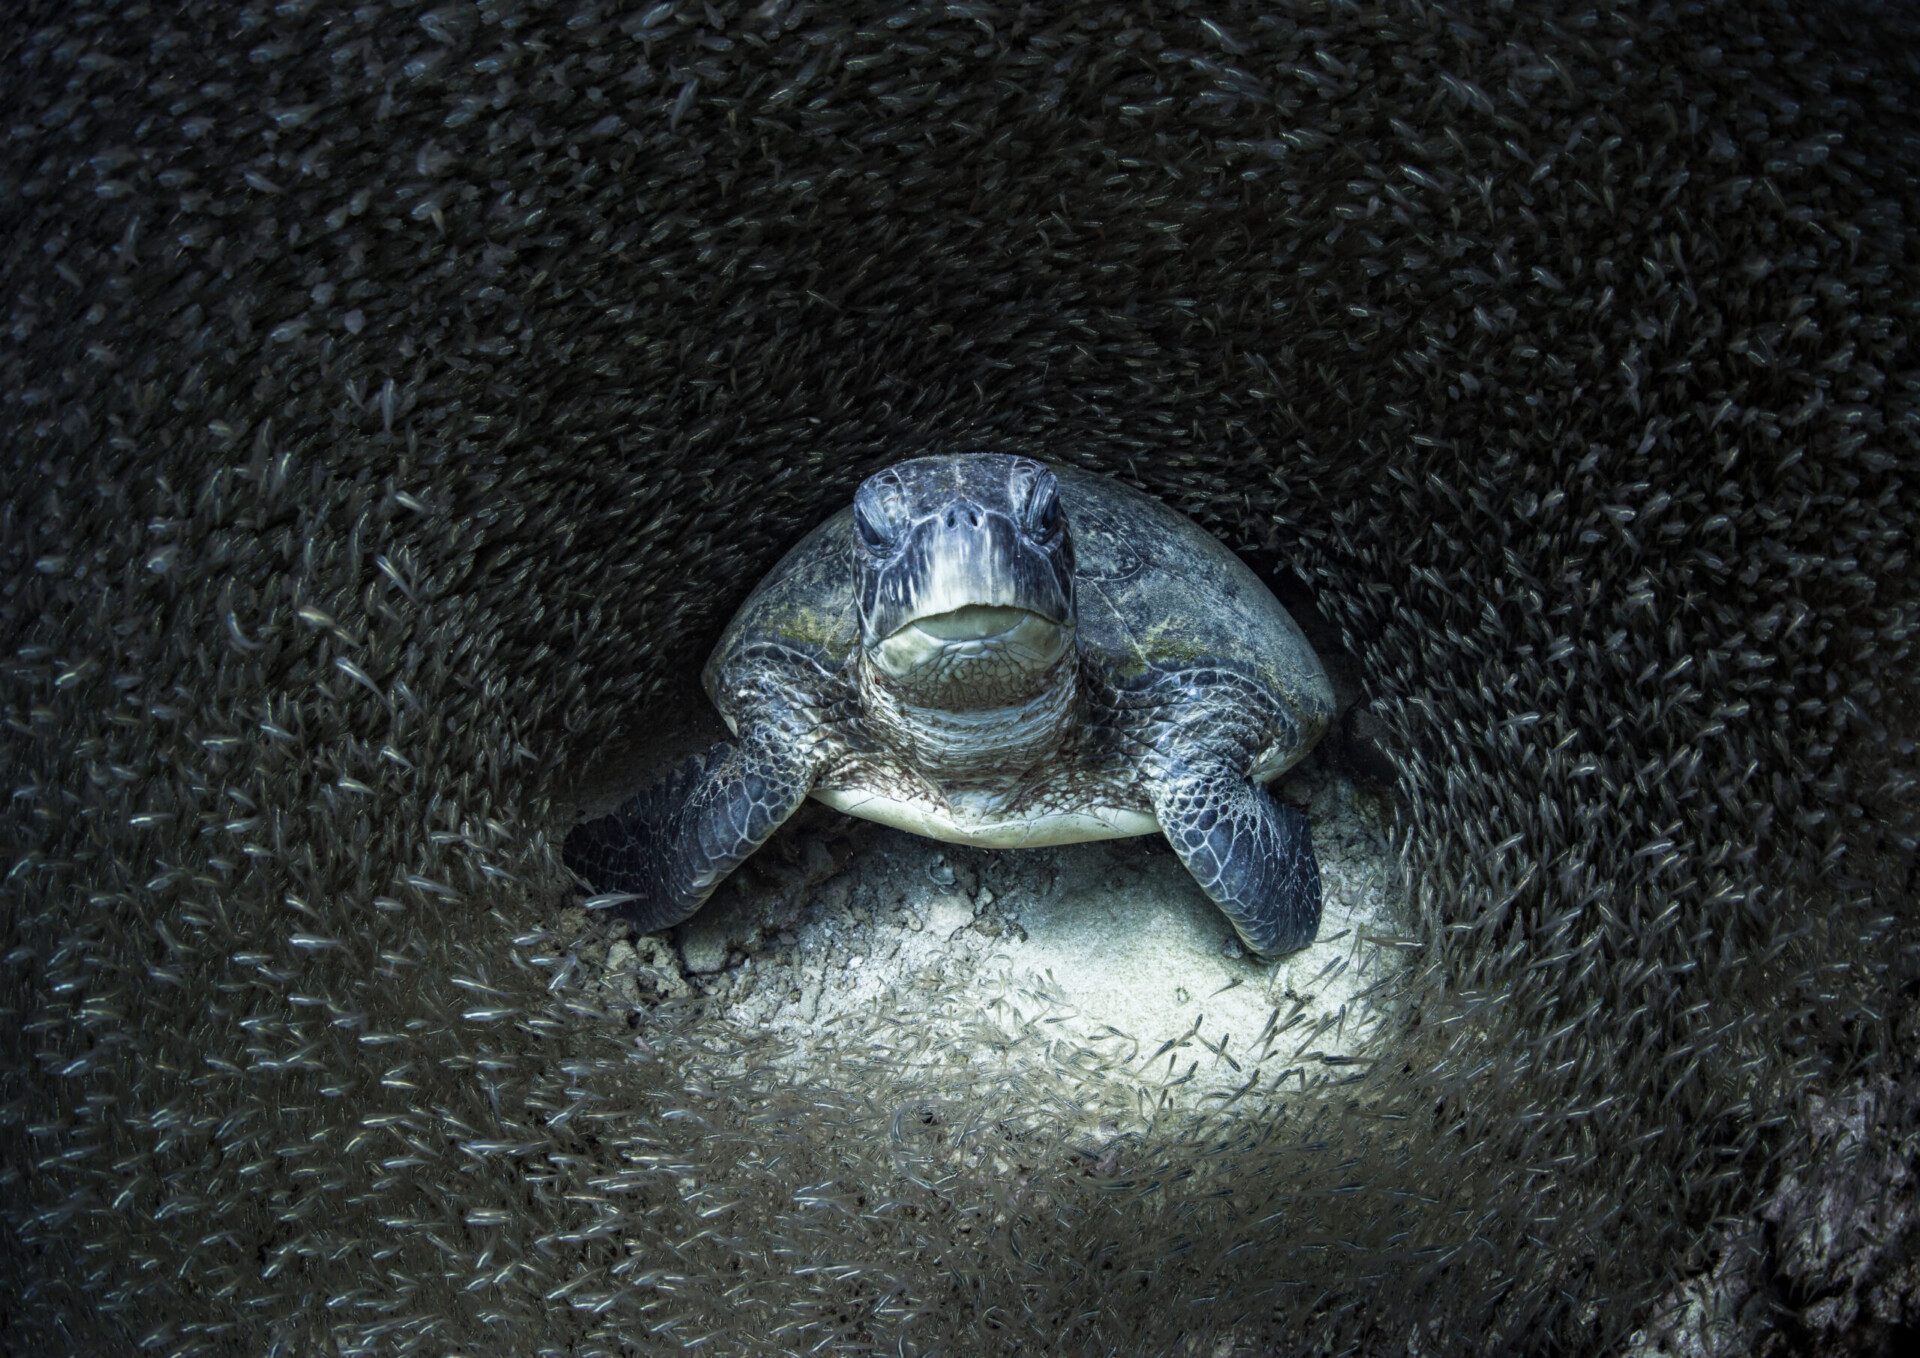 newbig5-Aimee-Jan.-Green-Sea-Turtle.-Status-Endangered.-Ningaloo-Marine-Park-Australia-960x679@2x.jpg